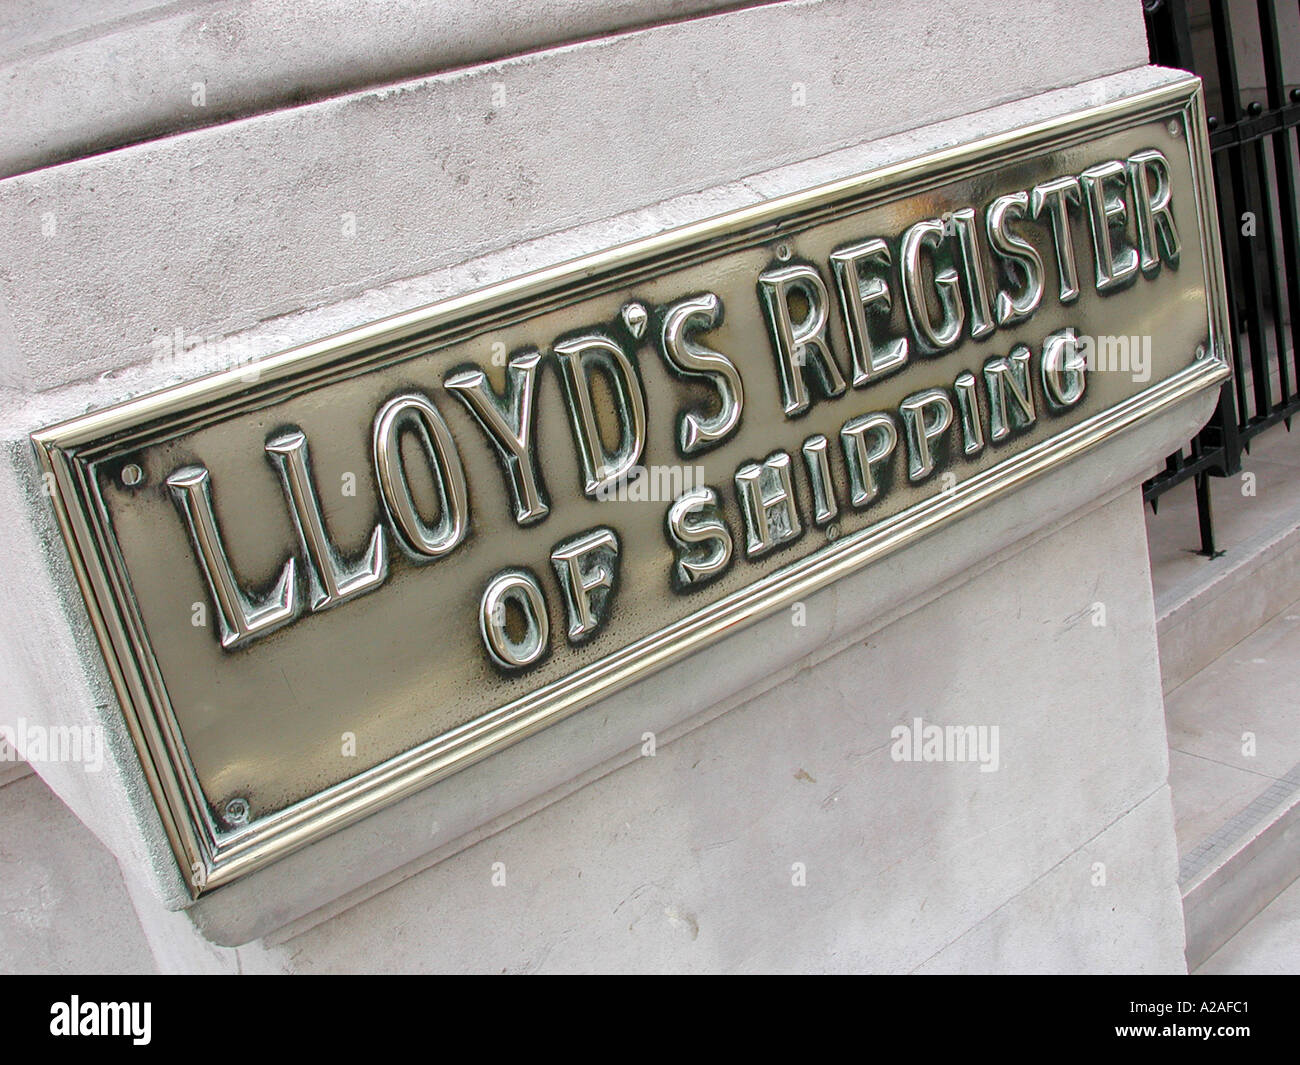 Registro Lloyds edificio segno, Fenchurch Street London EC3, Inghilterra, Regno Unito. Foto Stock